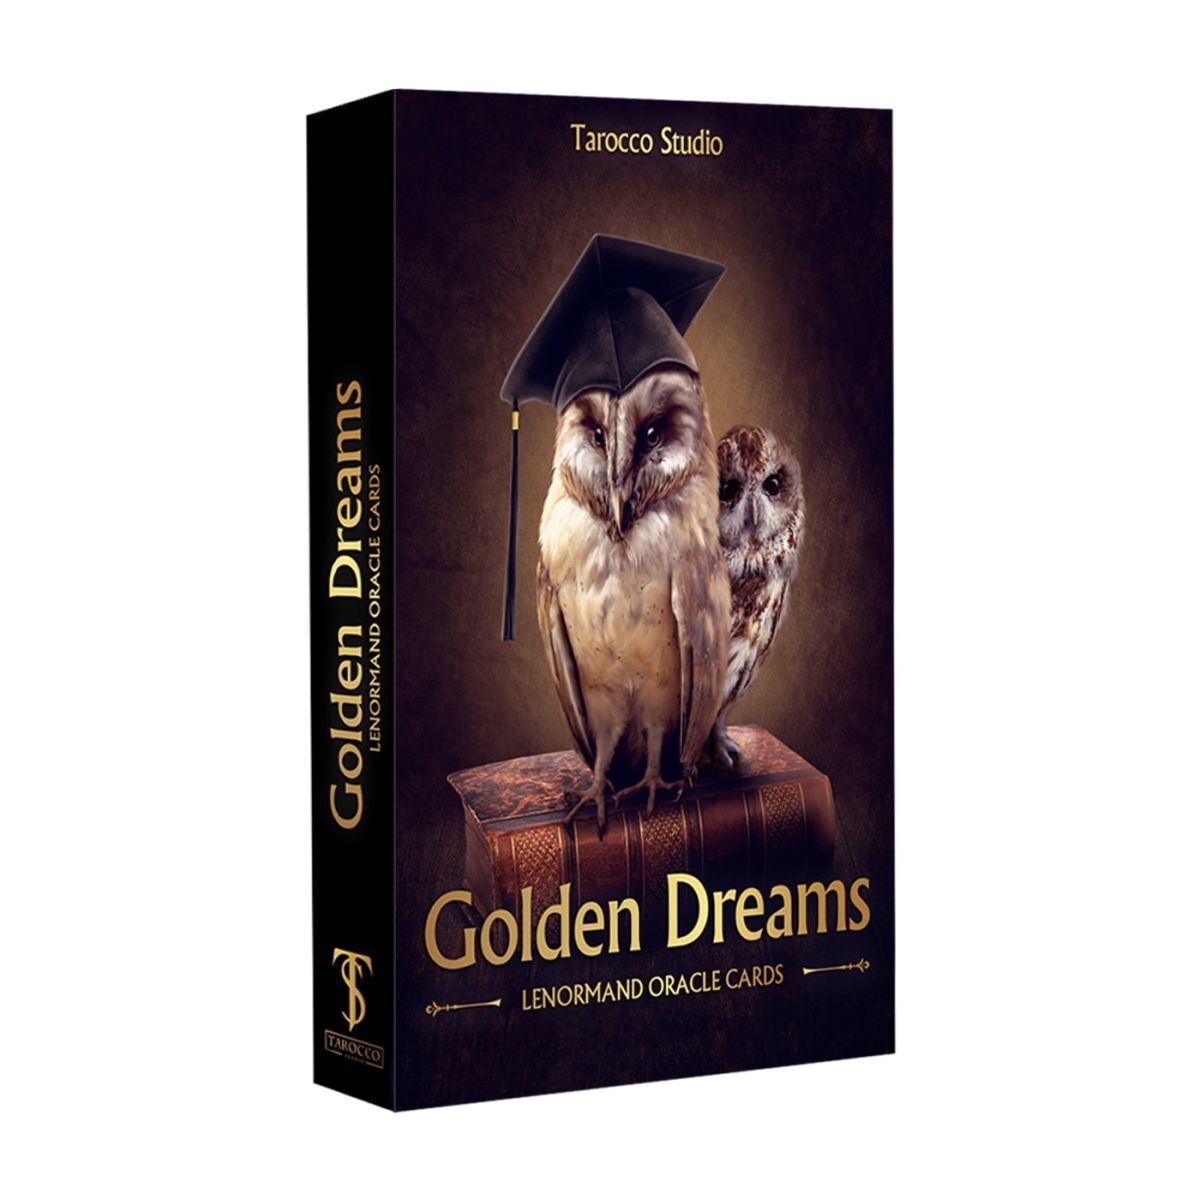 

Оракул Ленорман "Золотые Мечты" (Golden Dreams Lenormand Oracle Cards)